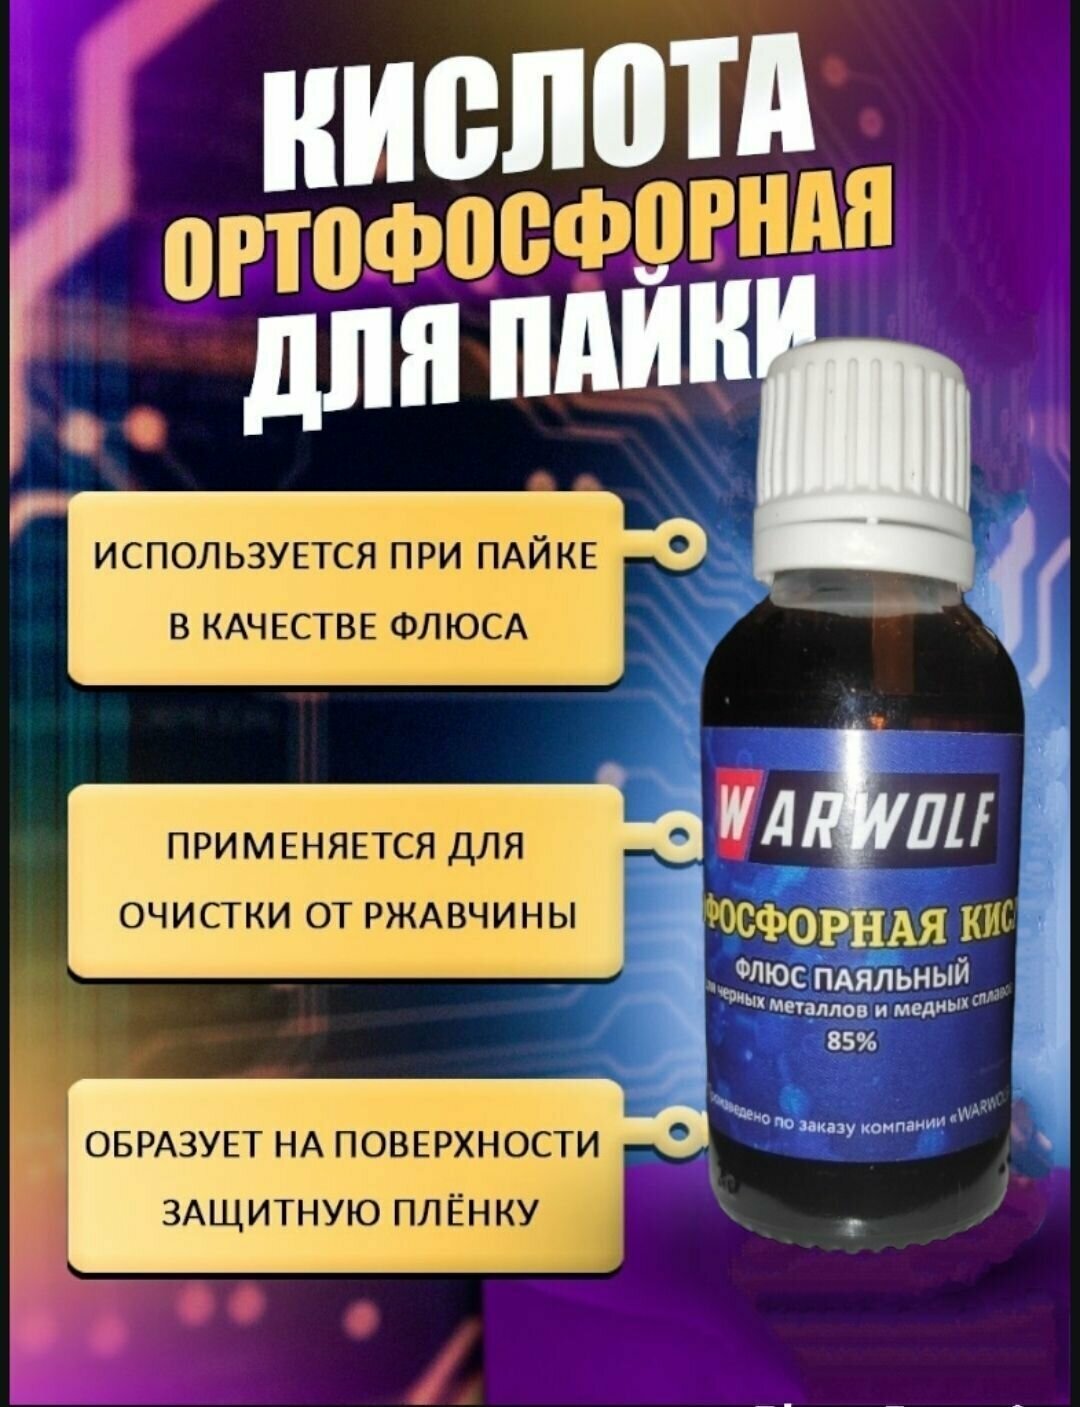 Ортофосфорная кислота пищевая Warwolf 85%, высокоактивный флюс паяльный, с капельницей. 30 мл.